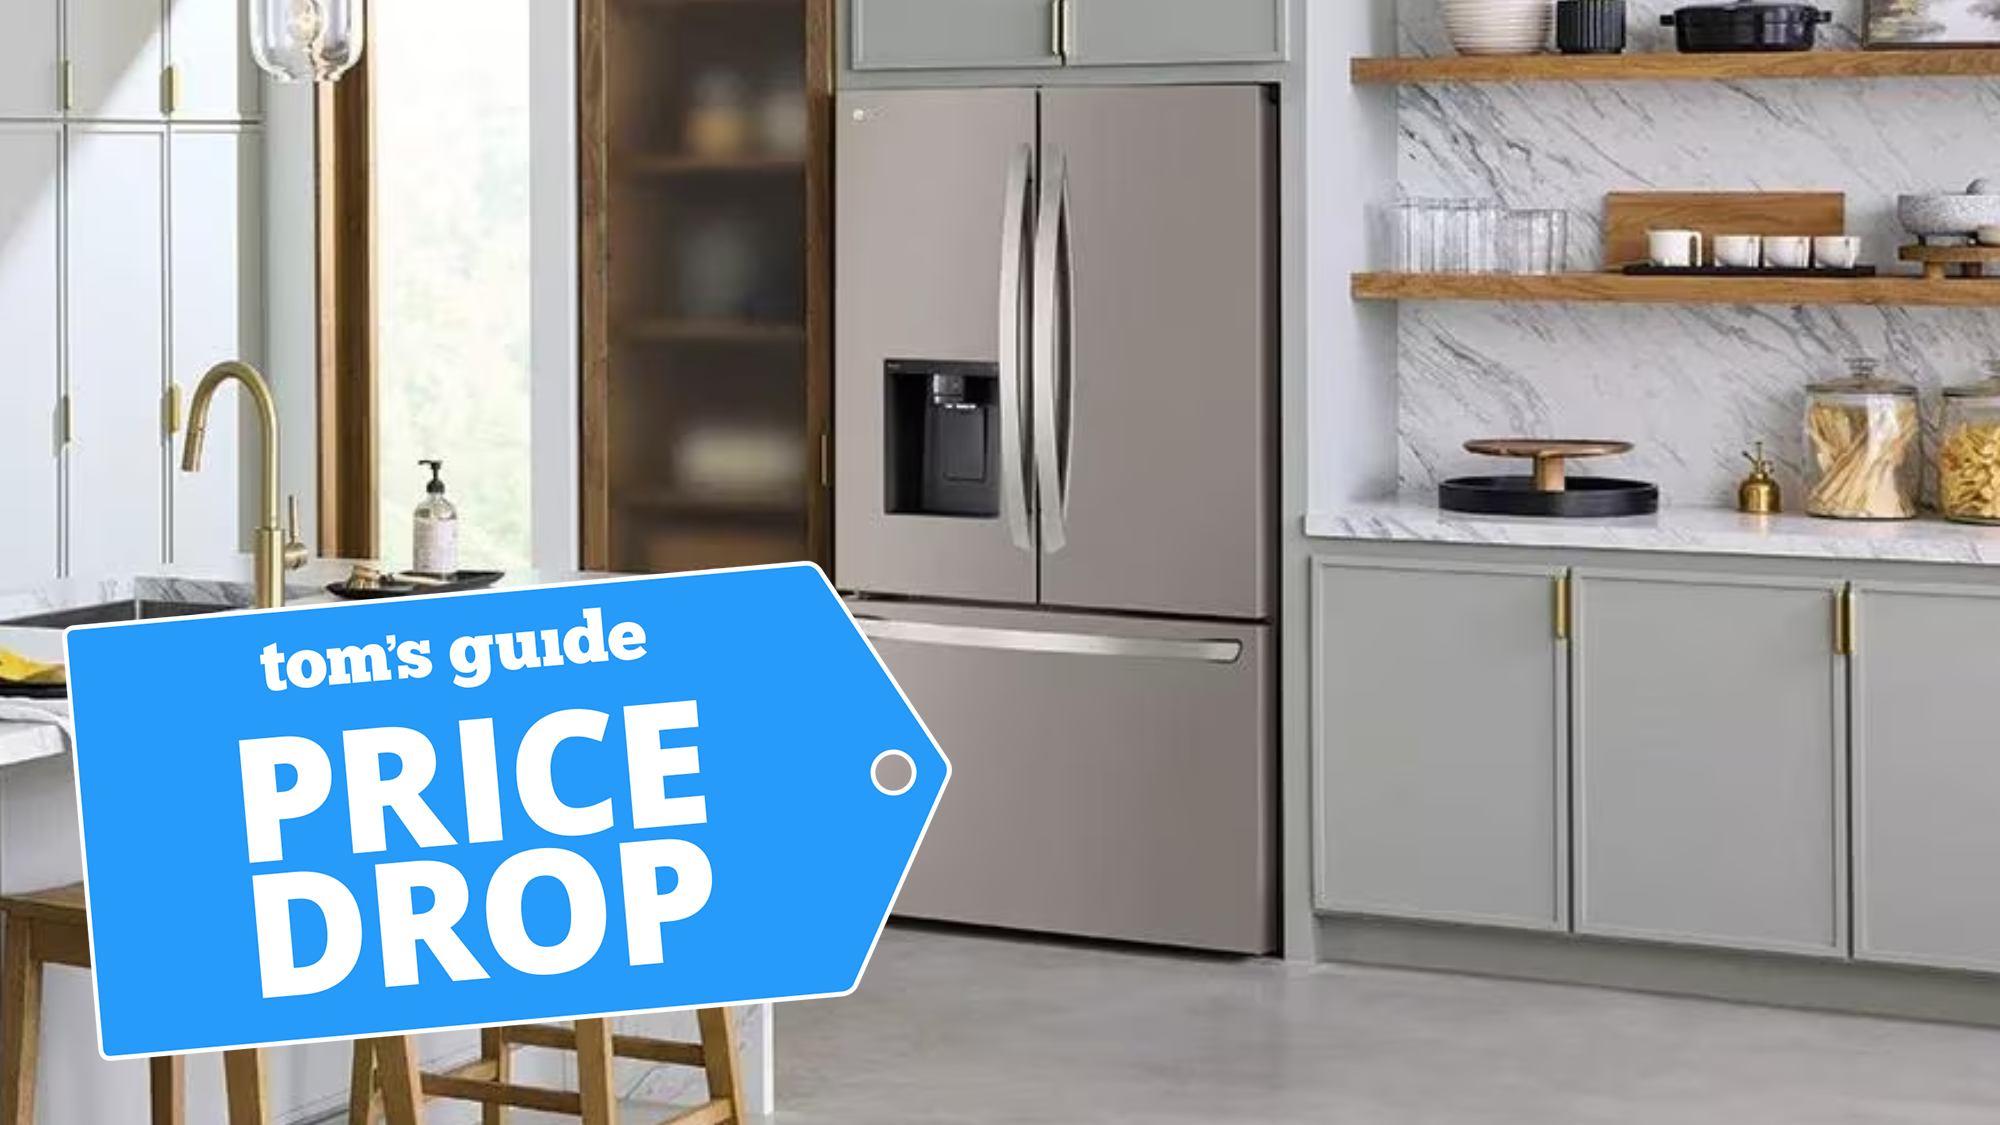 LG refrigerator shown in kitchen